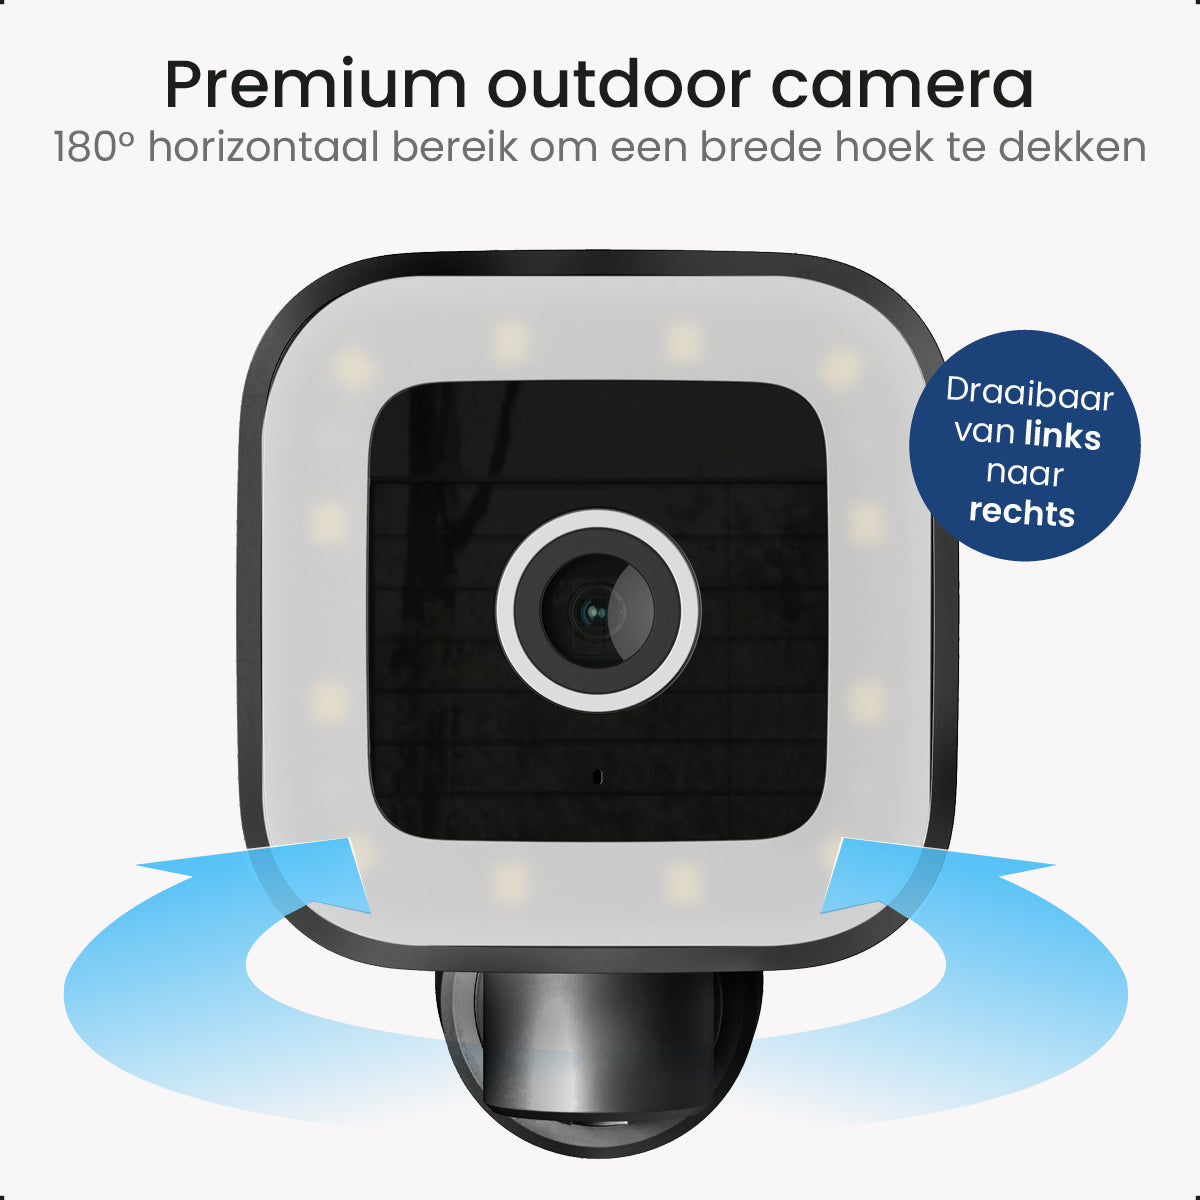 Gologi Premium Outdoorcamera - Nachtzicht - 4MP - Geluid en Bewegingsdetectie